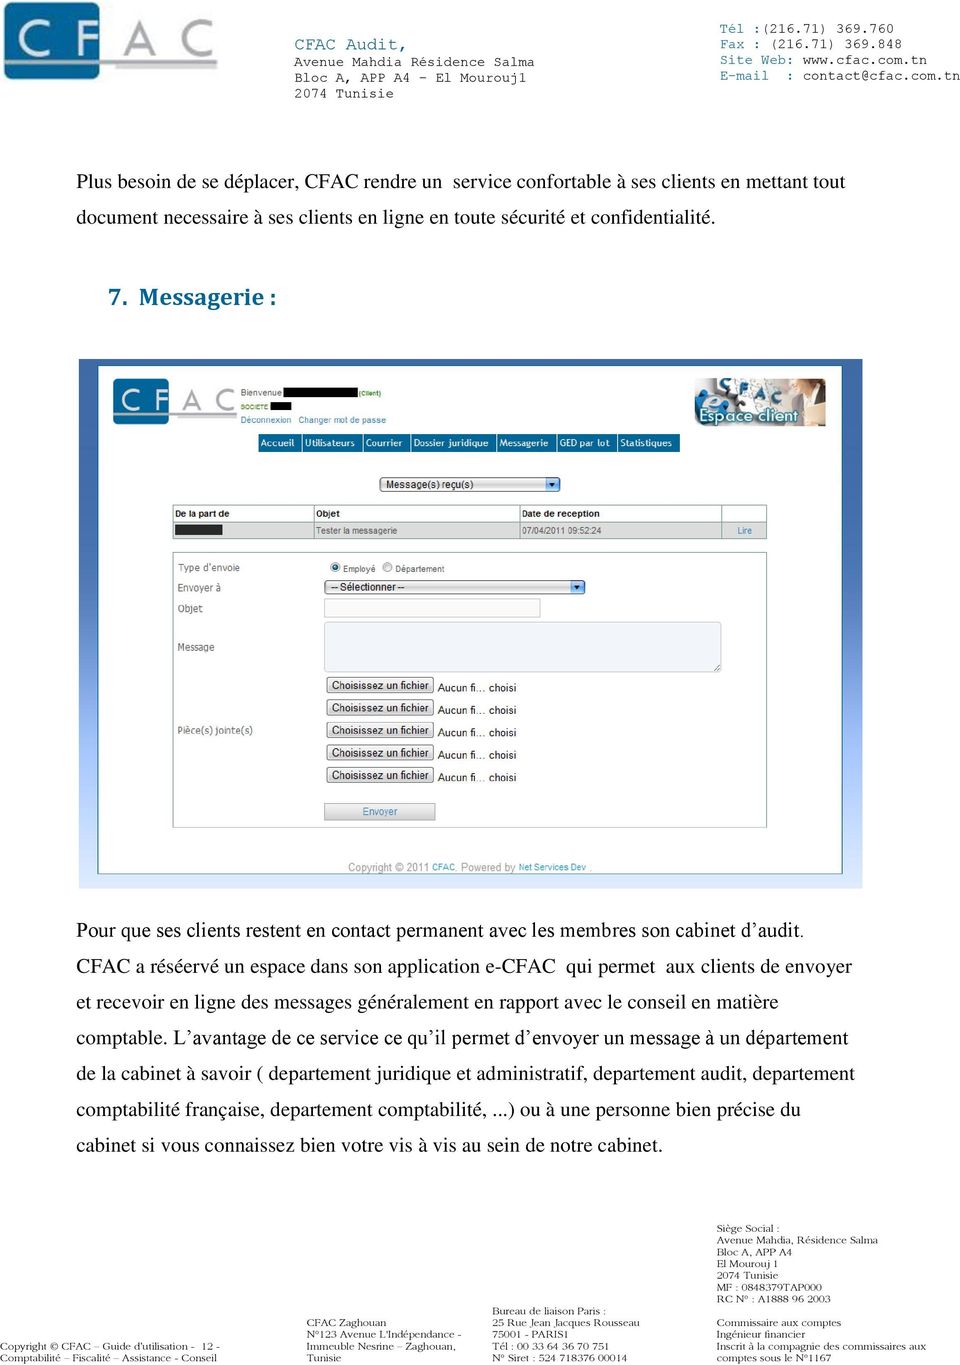 CFAC a réséervé un espace dans son application e-cfac qui permet aux clients de envoyer et recevoir en ligne des messages généralement en rapport avec le conseil en matière comptable.